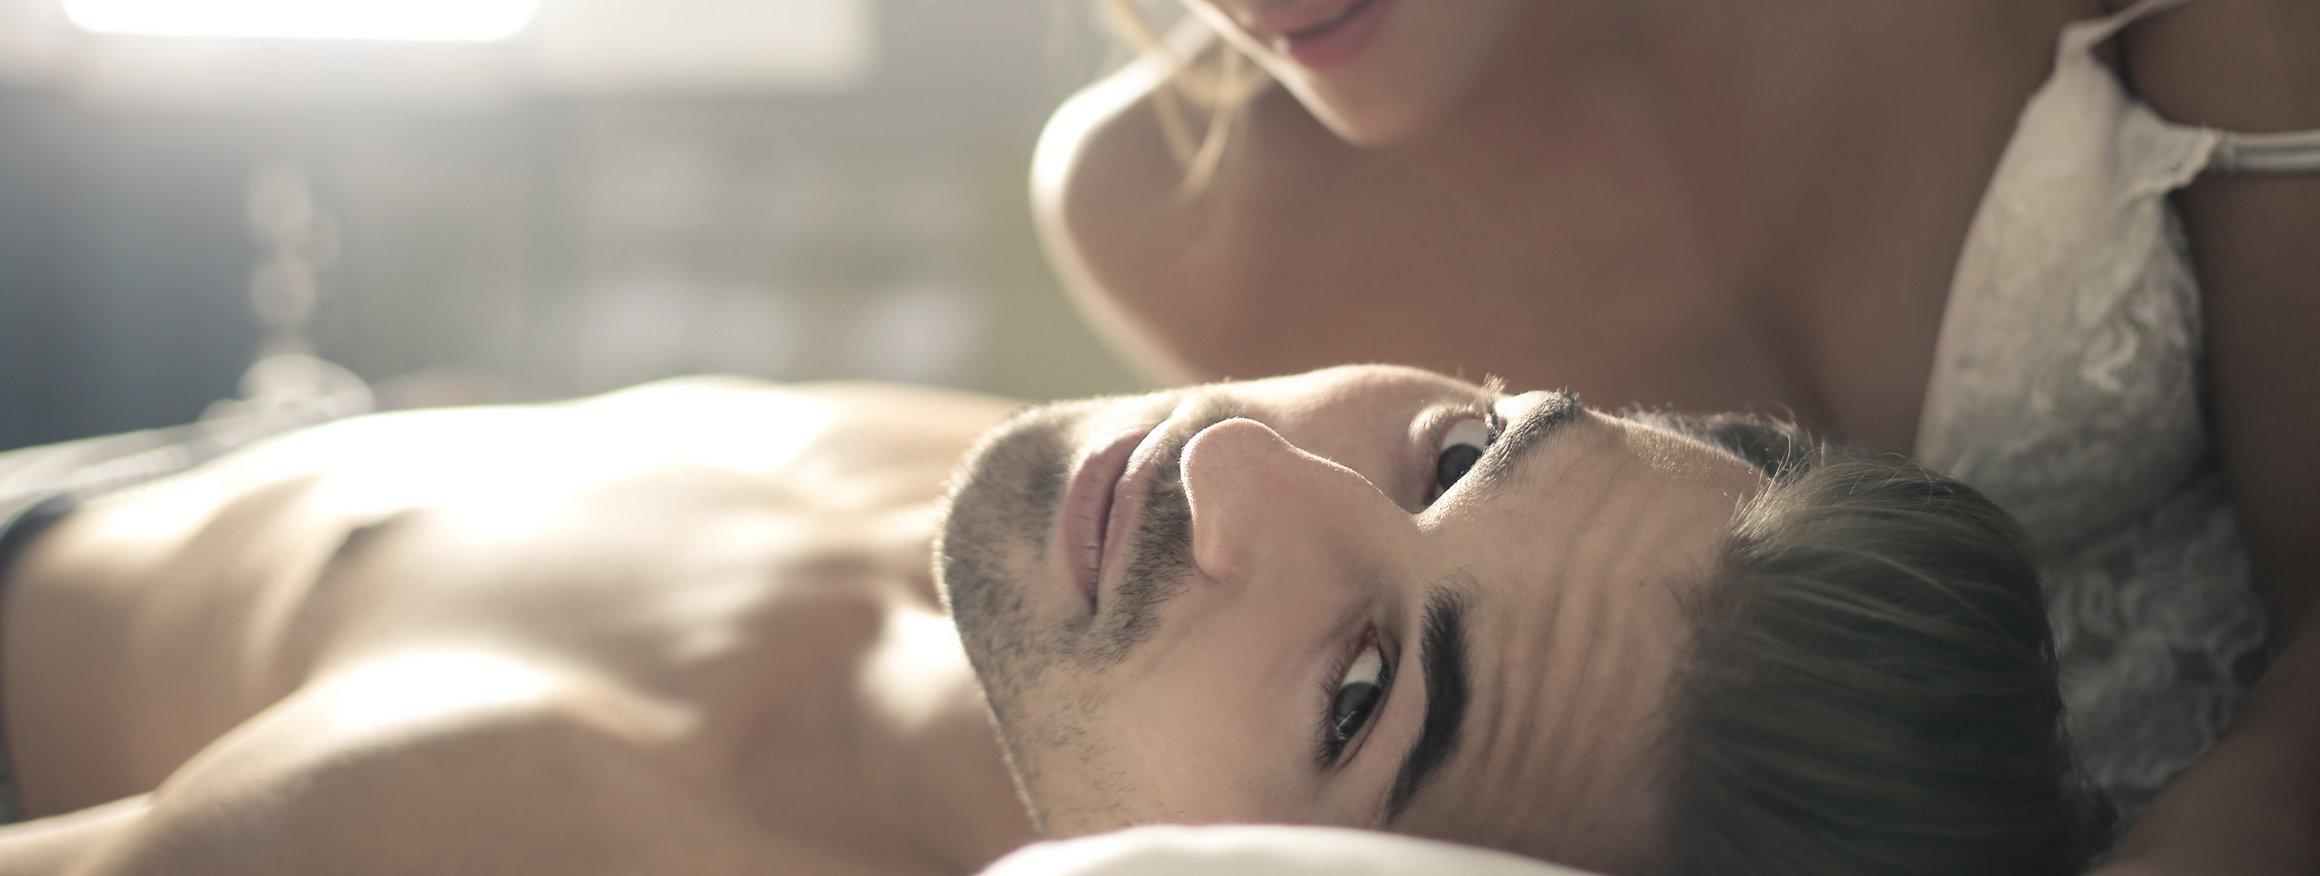 Ein junger Mann ist mit einer Frau im Bett und schaut dabei geheimnisvoll